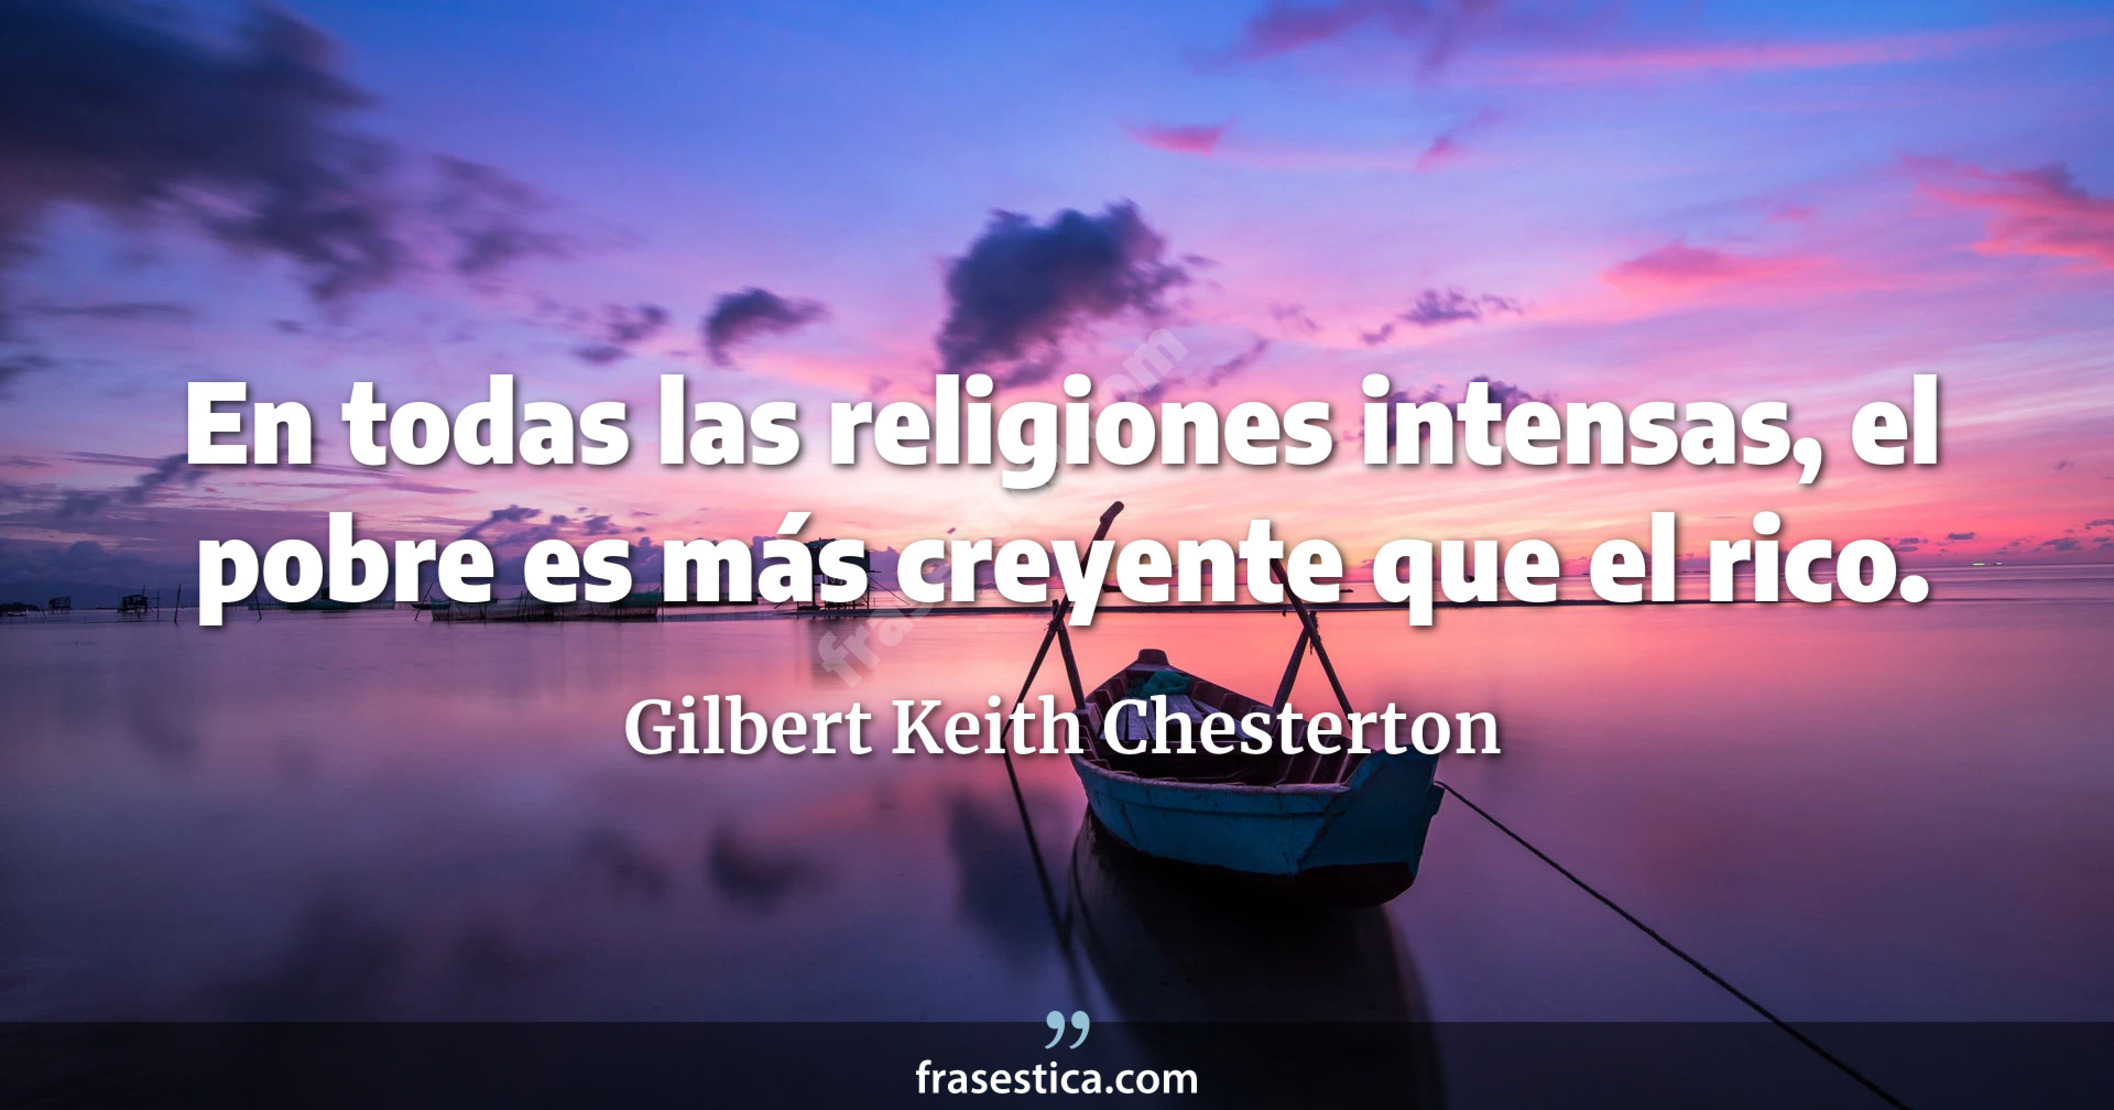 En todas las religiones intensas, el pobre es más creyente que el rico. - Gilbert Keith Chesterton